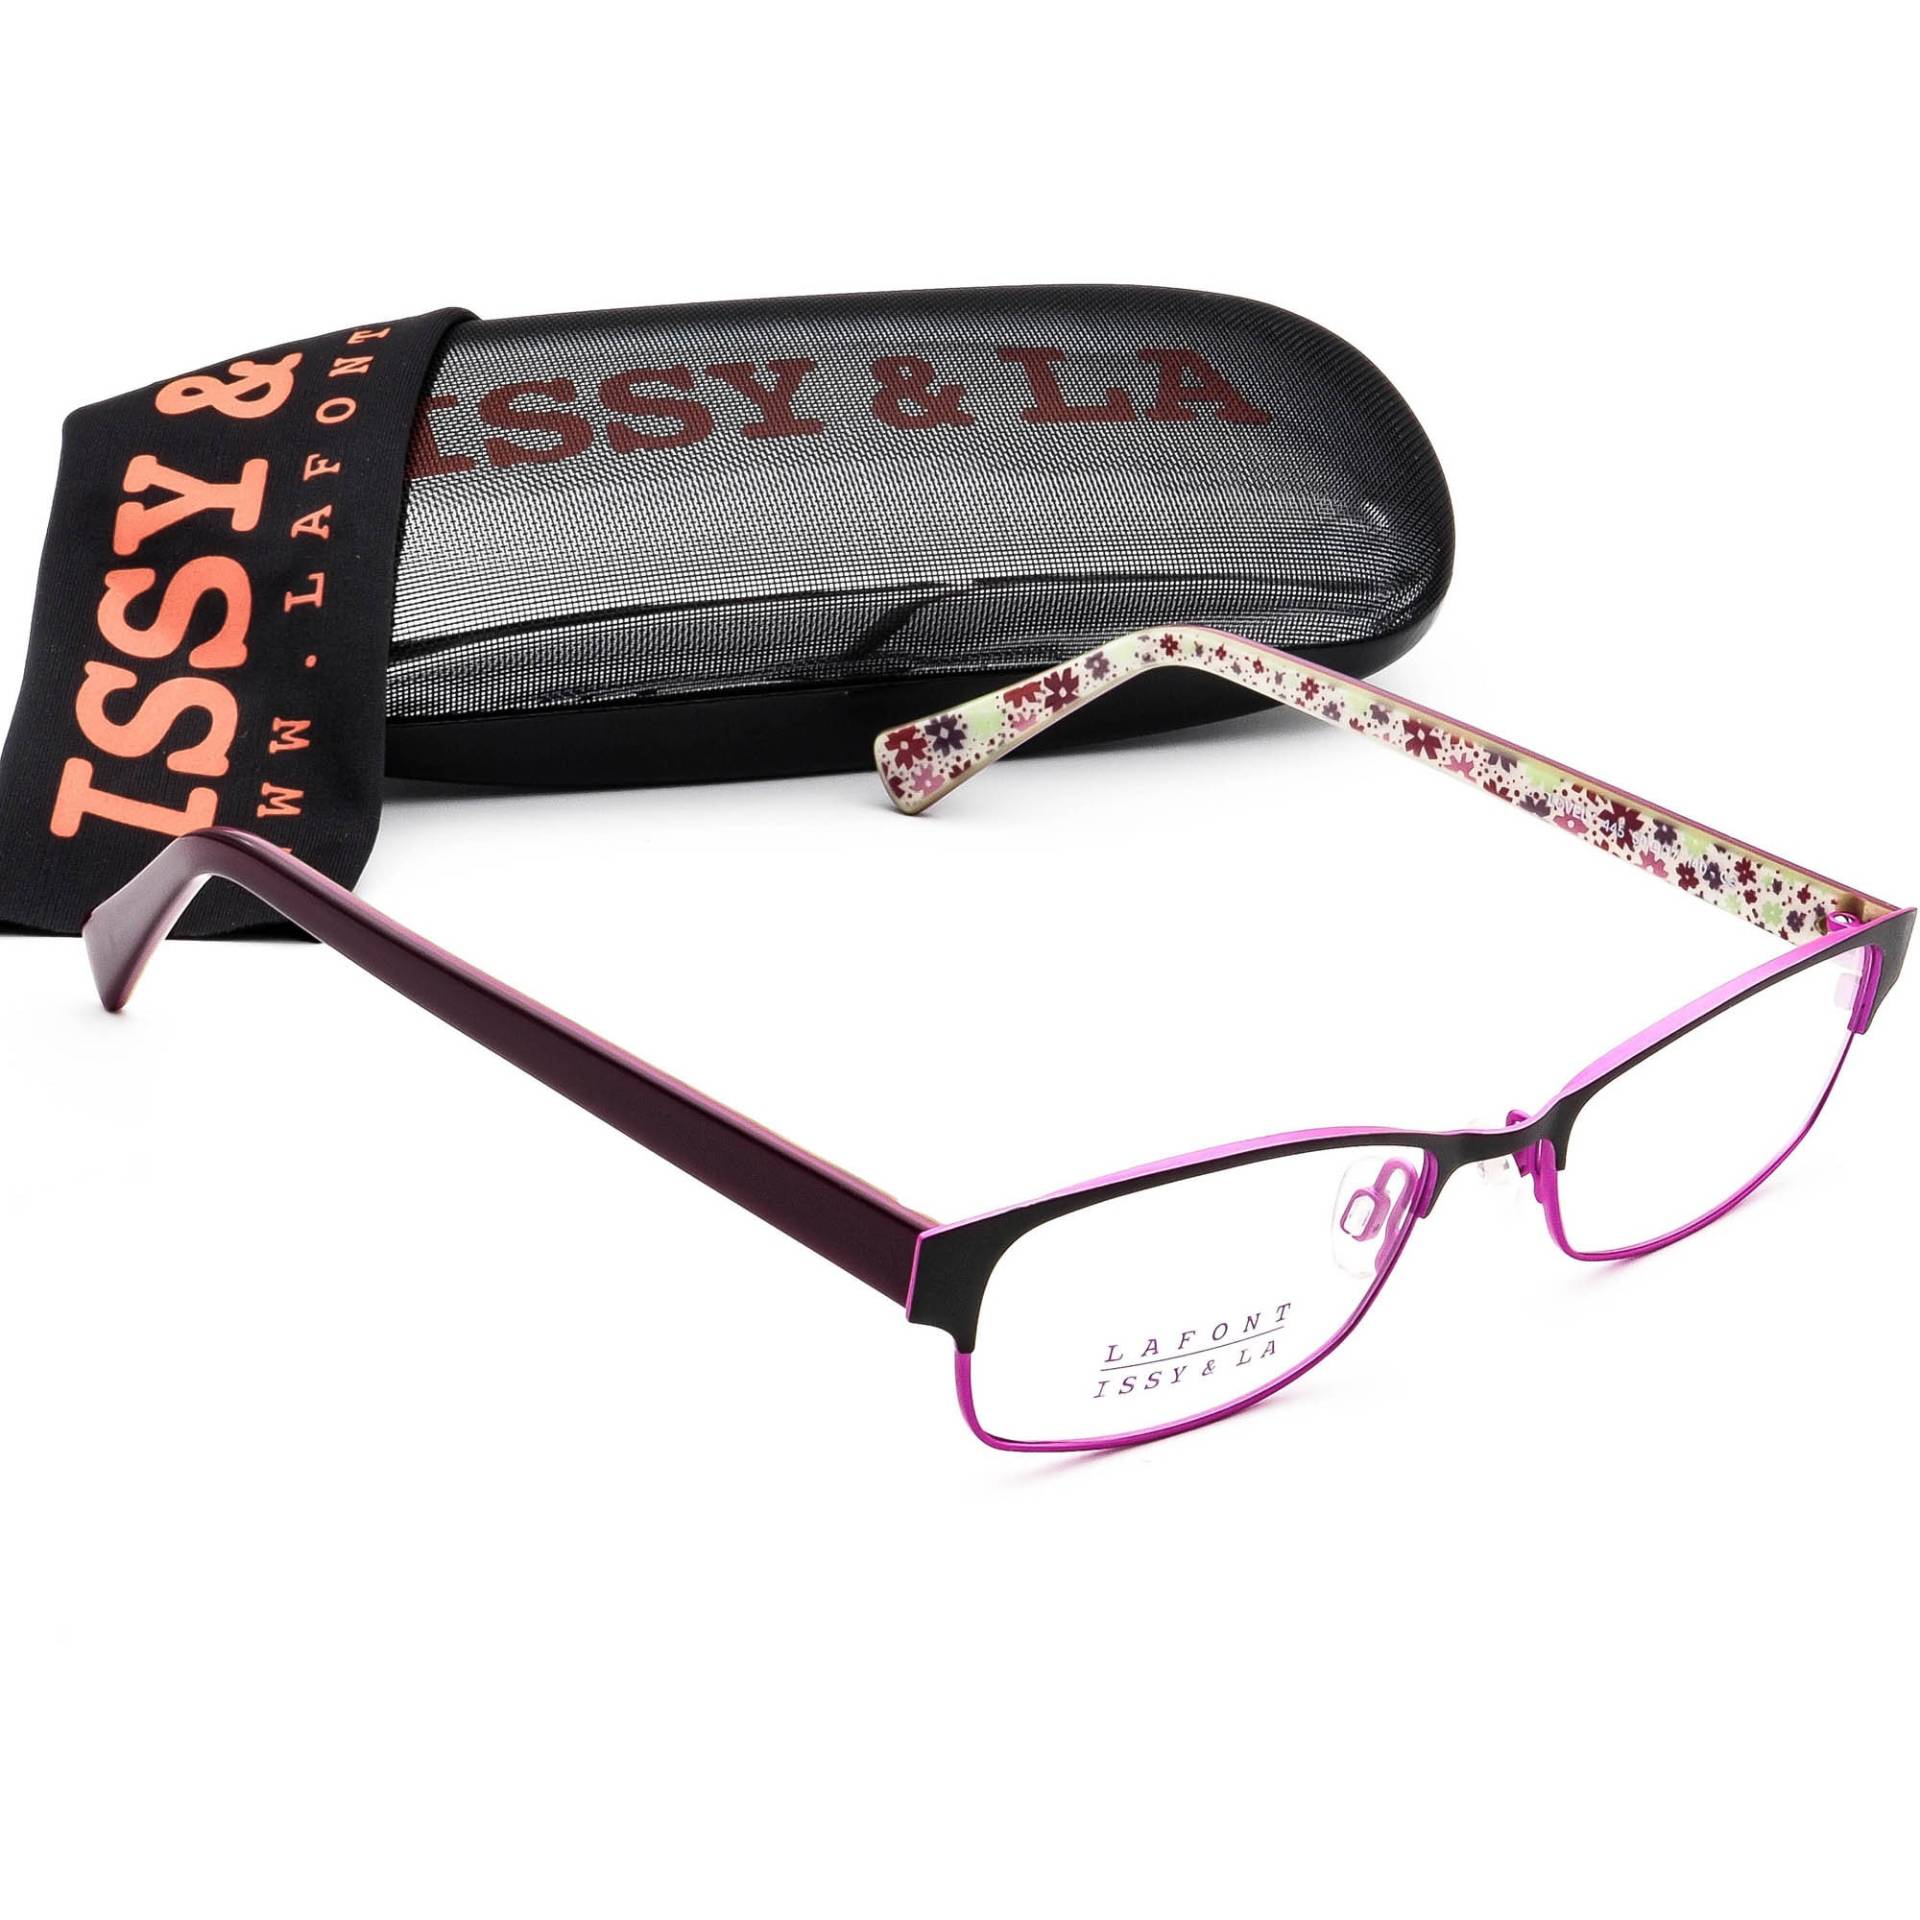 Lafont - Issy & La Eyeglasses Lovely 445 Schwarz/Lila Rahmen France 50[]17 140 von AfsharOptics